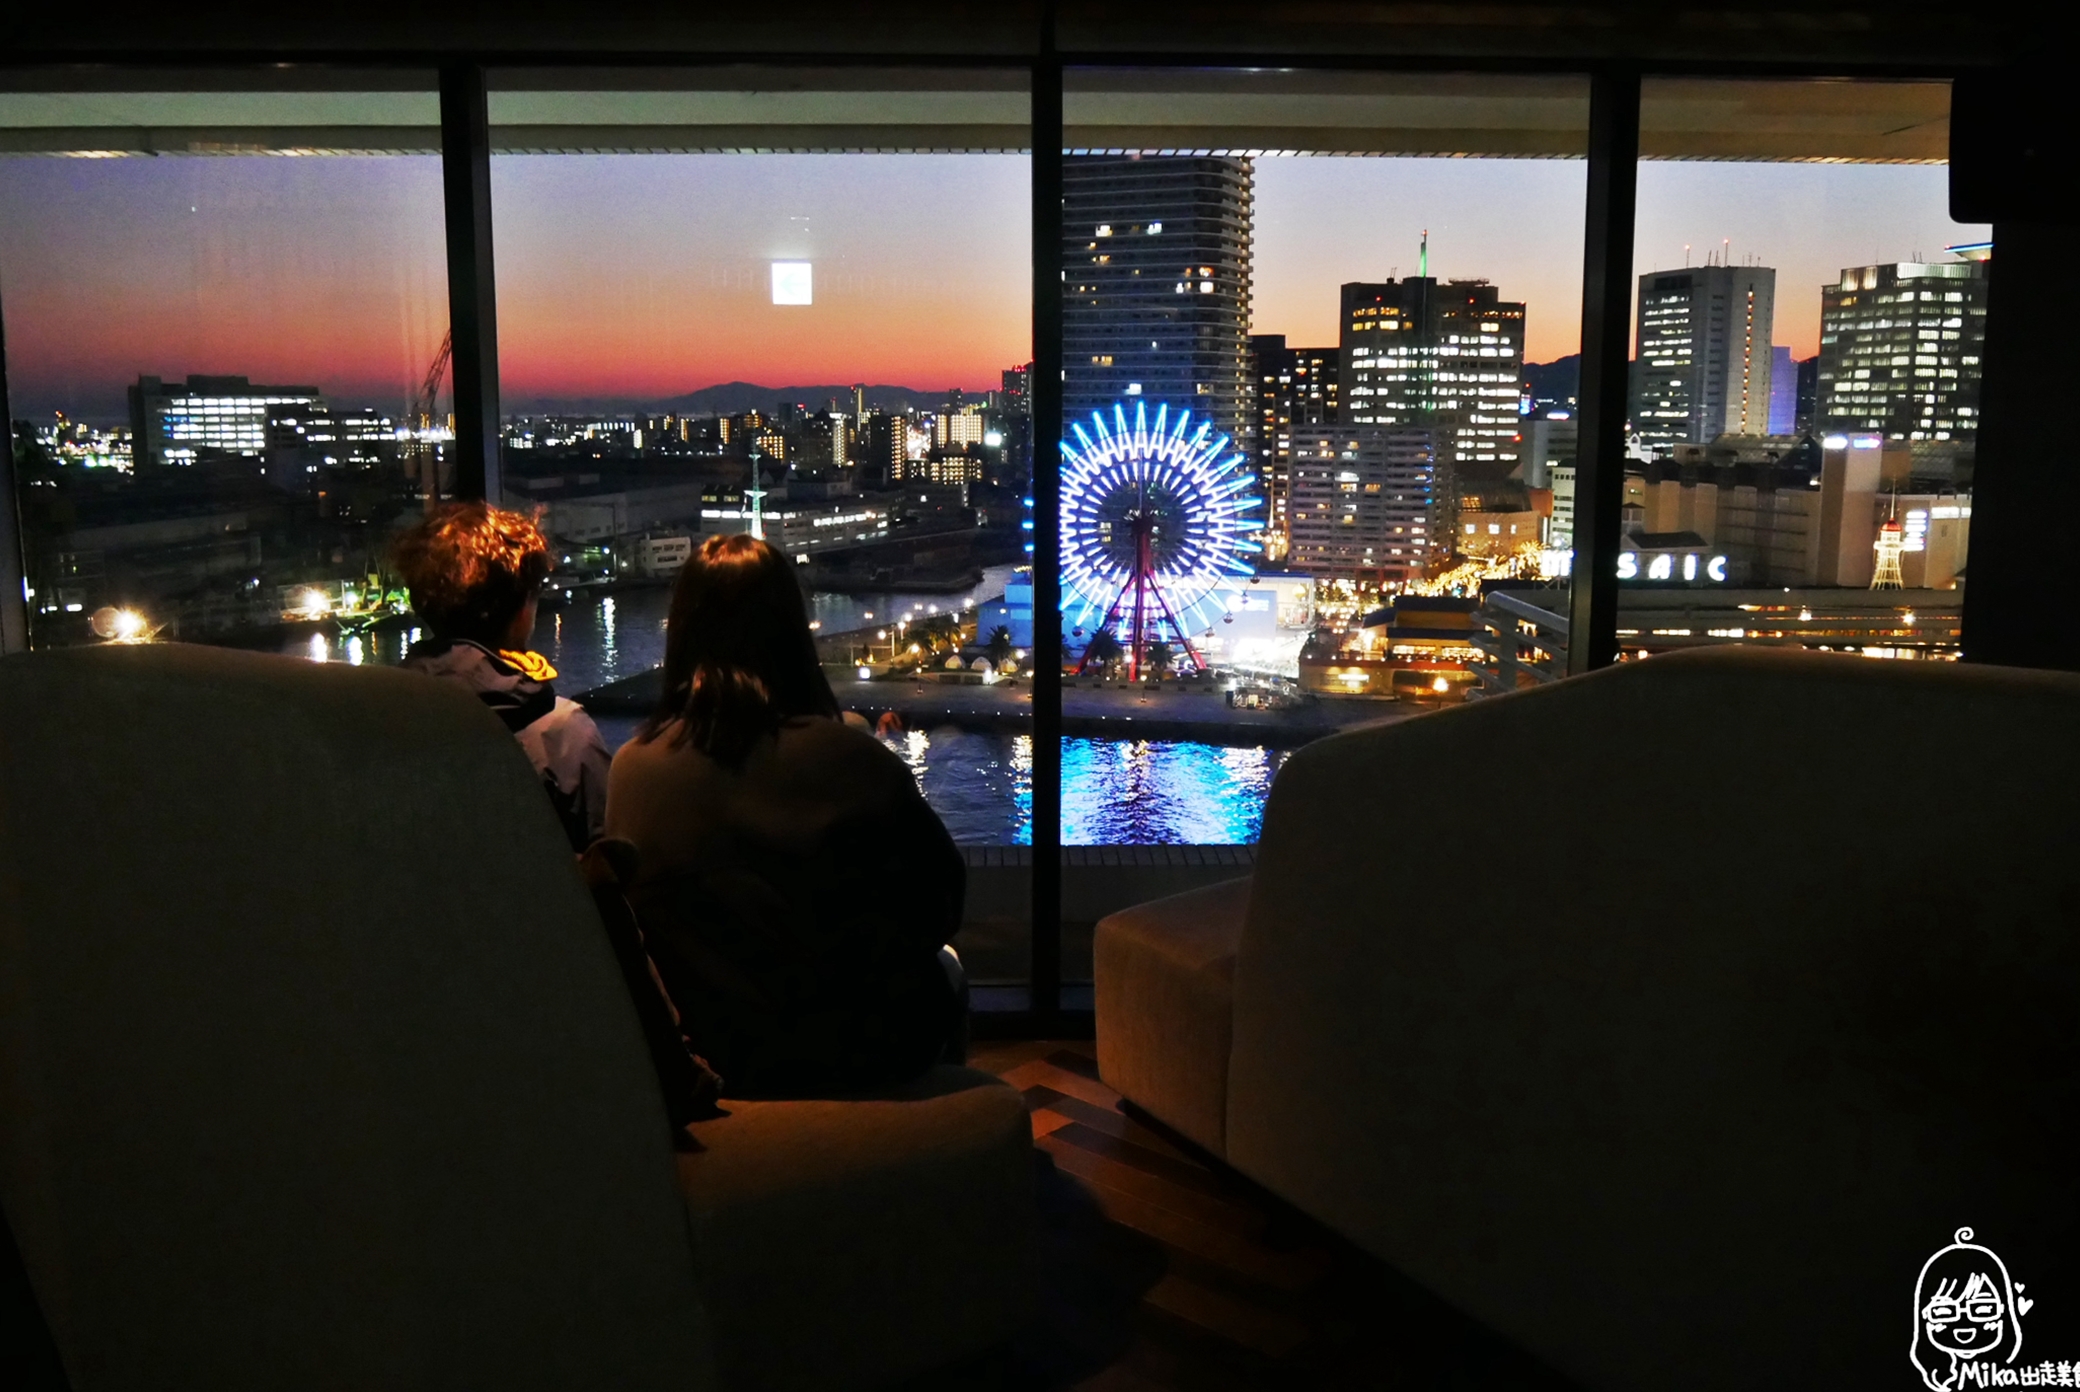 『日本。神戶』 美利堅公園東方大酒店 Kobe Meriken Park Oriental Hotel｜坐擁神戶港夜景，海上帆船大飯店好威。 海景第一排CP值超高的五星級酒店，提供免費接駁車來回三宮站。